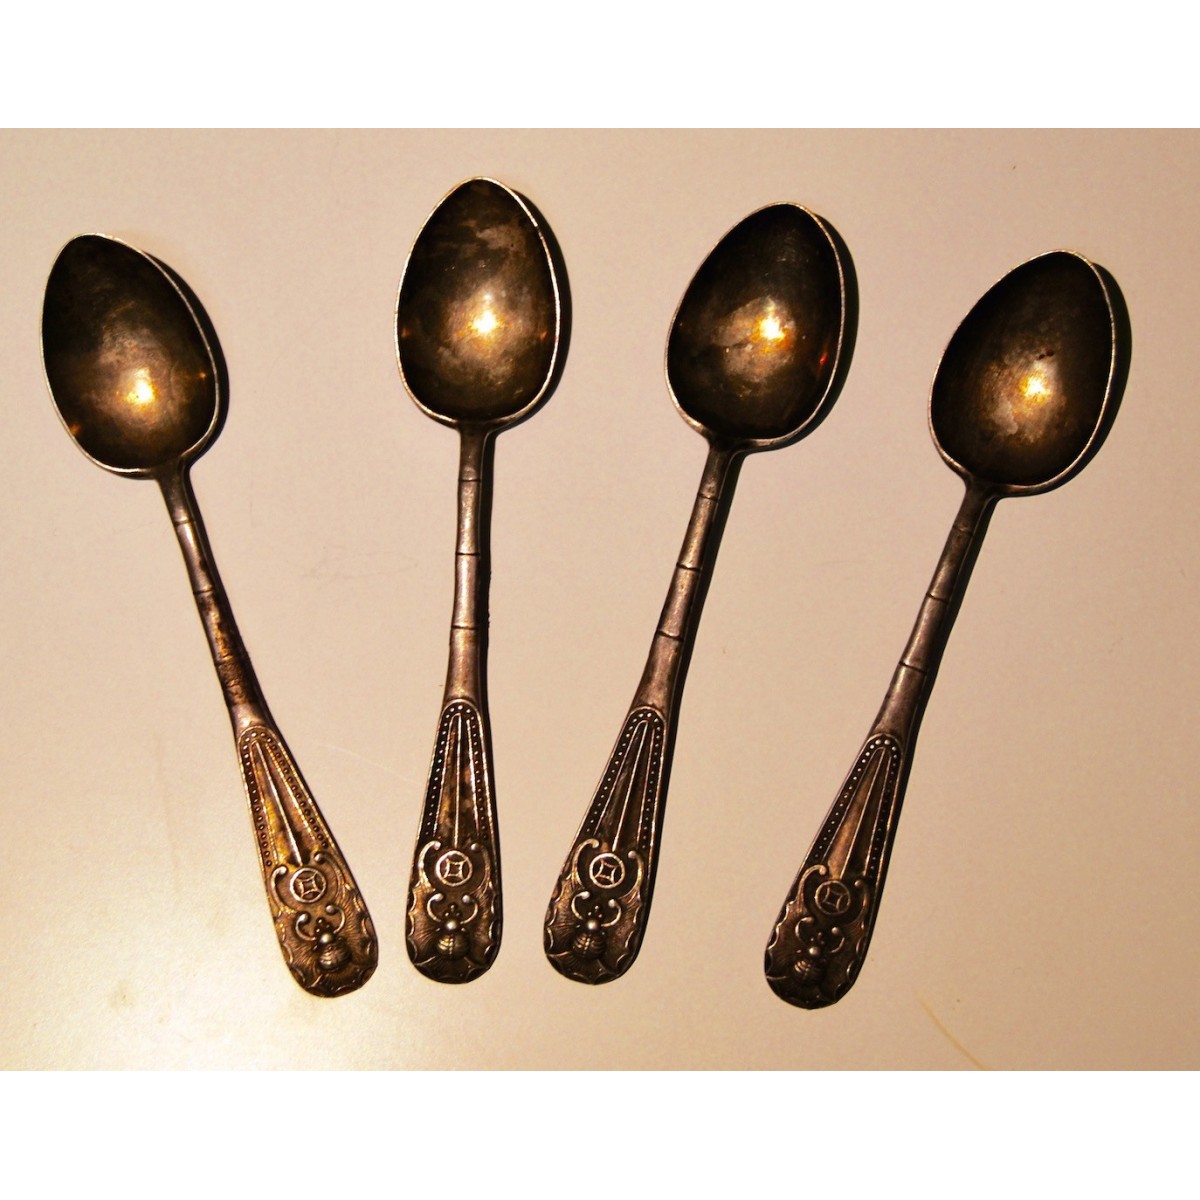 Quattro cucchiaini d’argento, Cina, primi 900